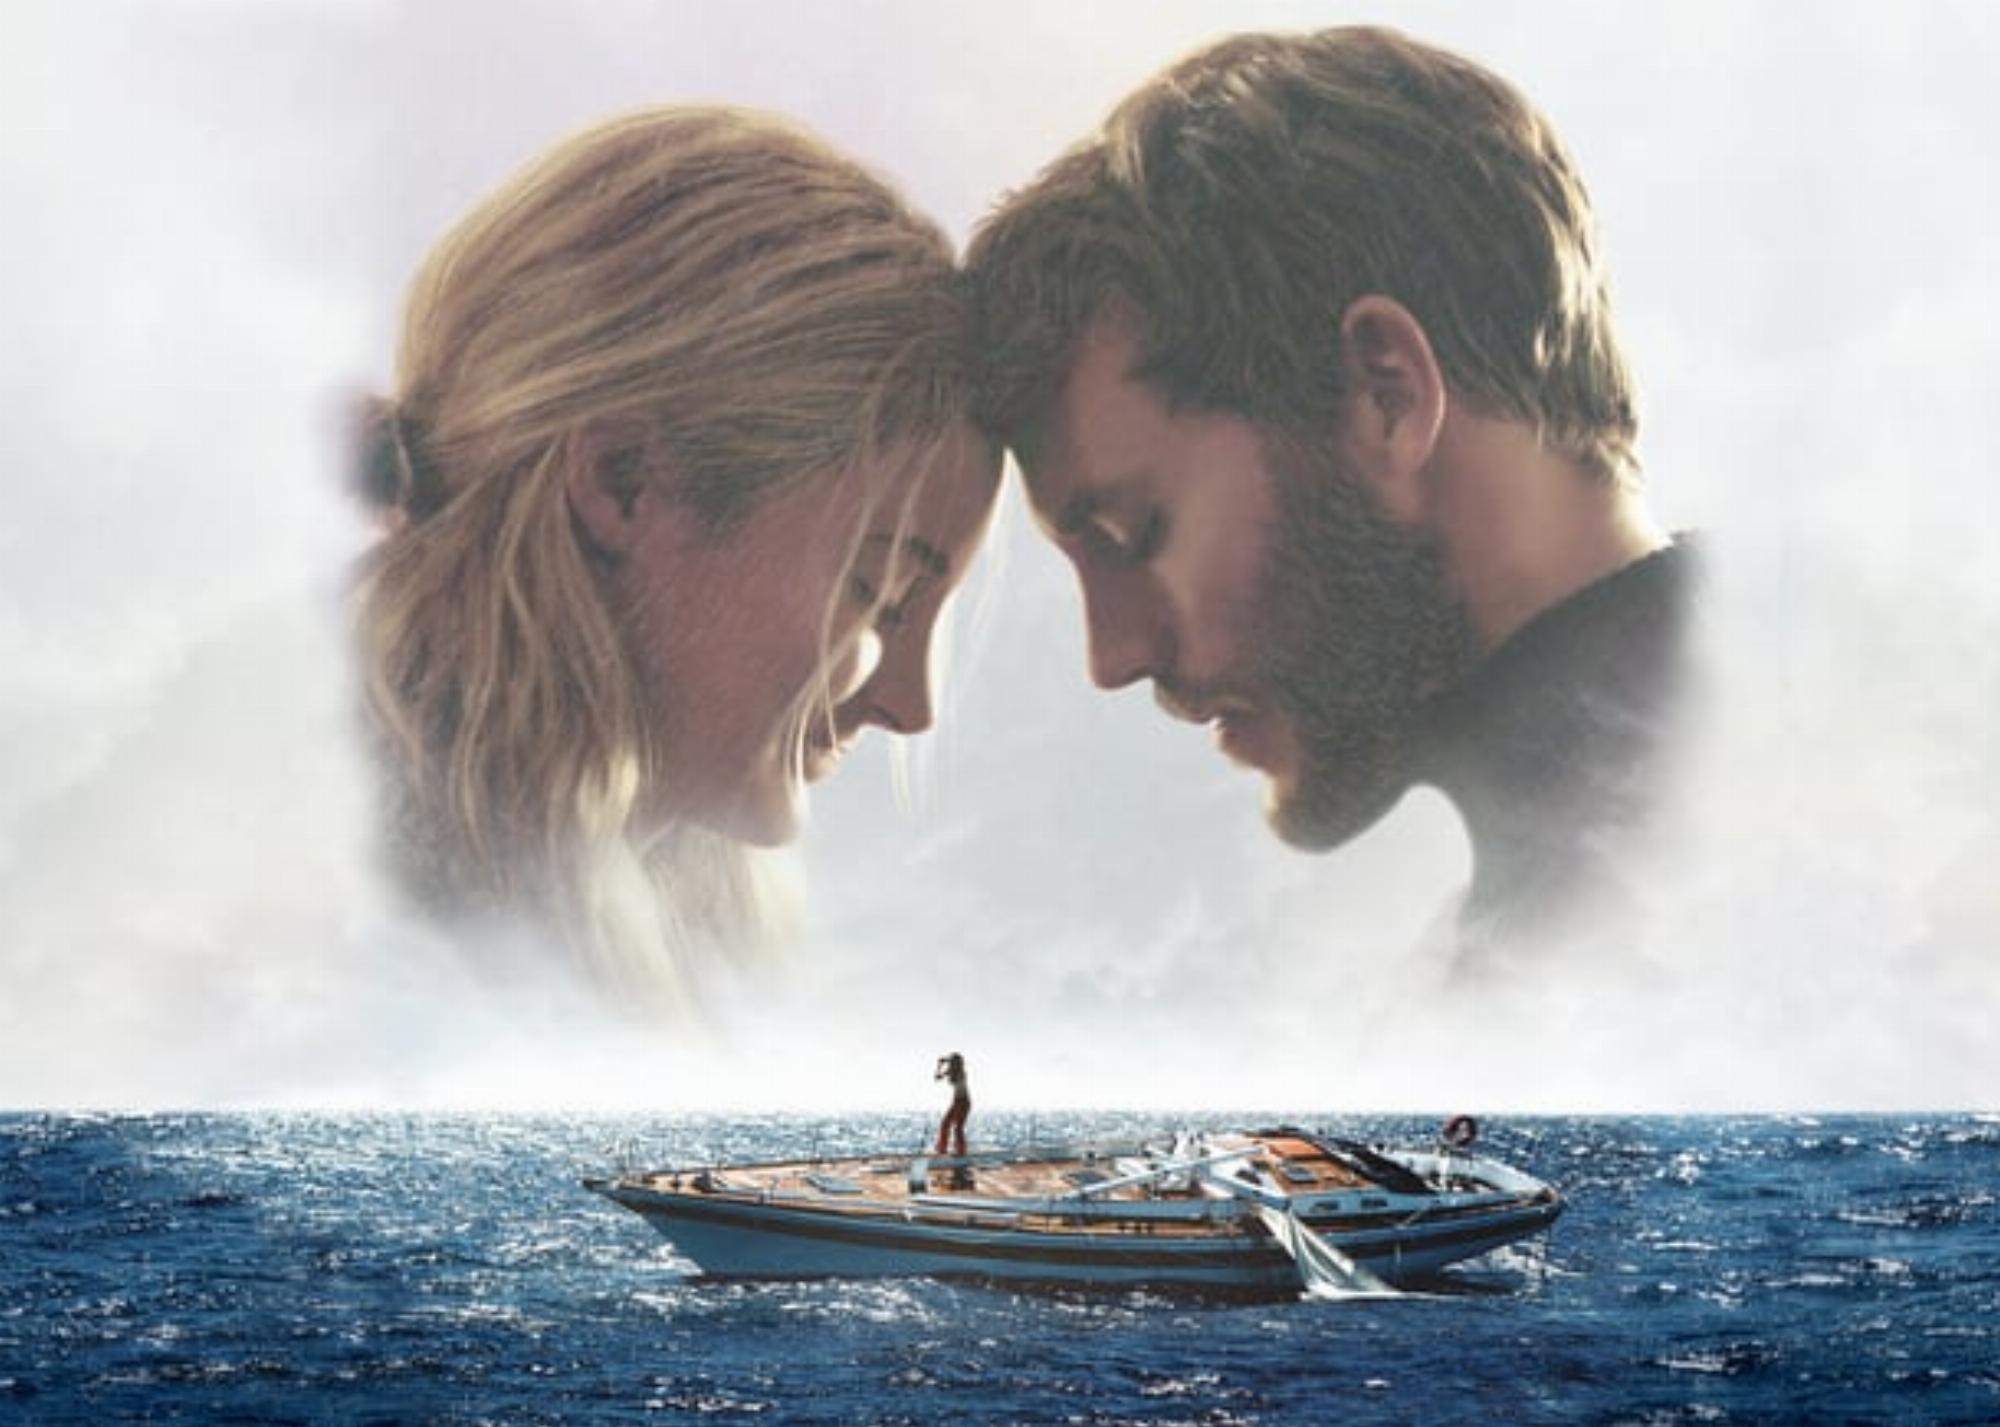 Adrift 2018 Movie Background